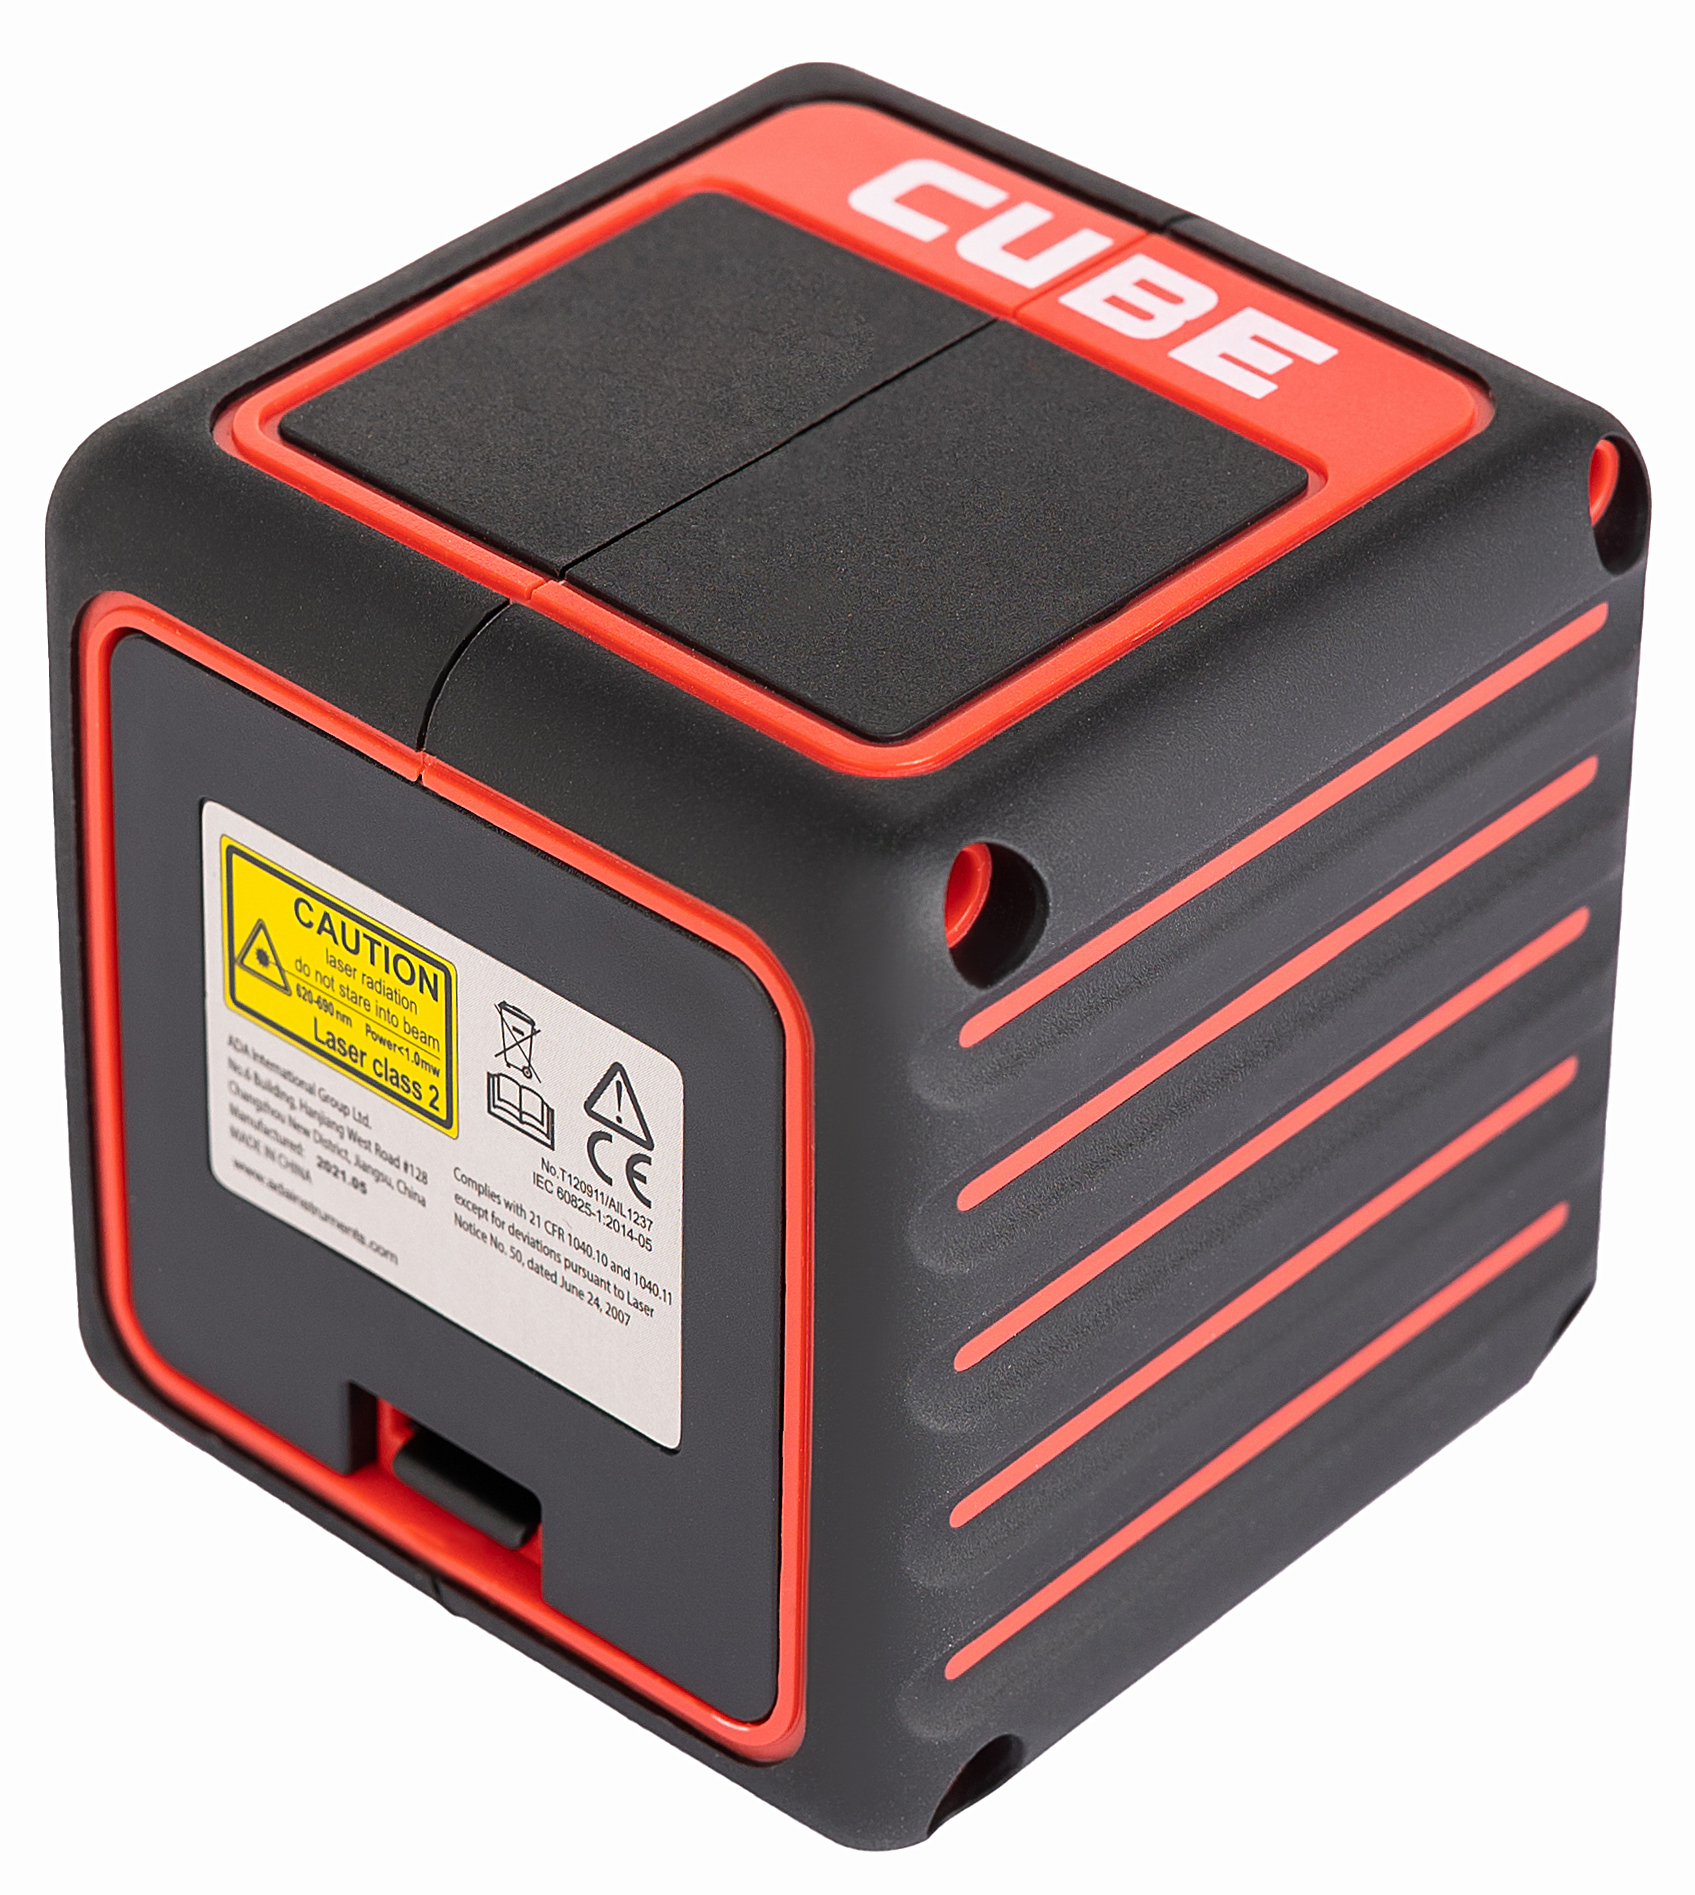 Лазерный нивелир ada Cube Basic Edition. Кейс для лазерного уровня ada Cube. Ada instruments cube